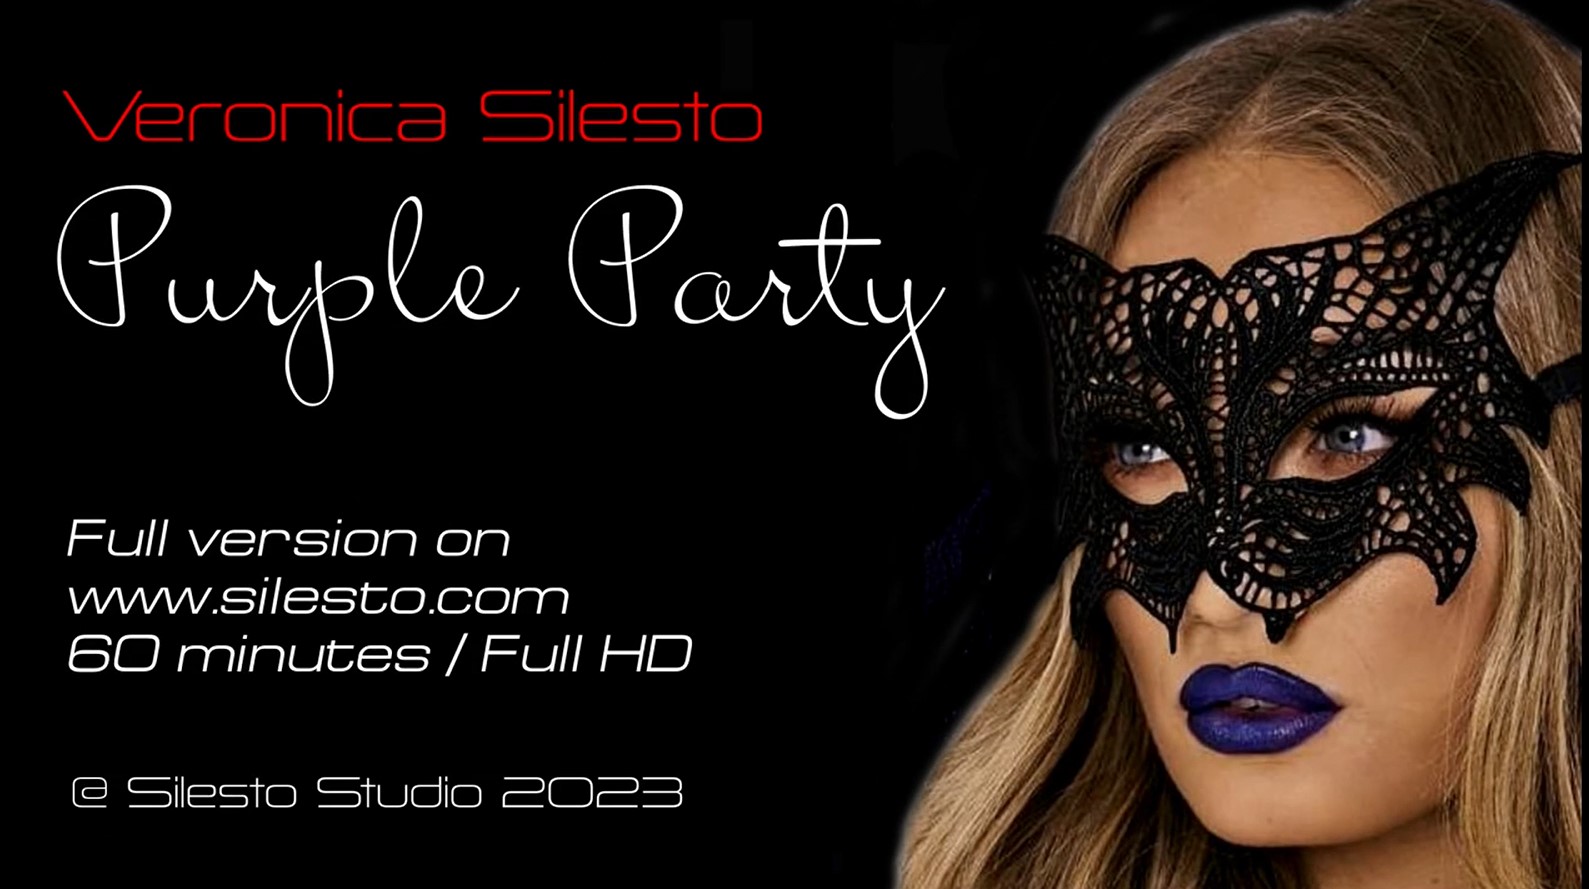 Veronica Silesto - Purple Party in HD